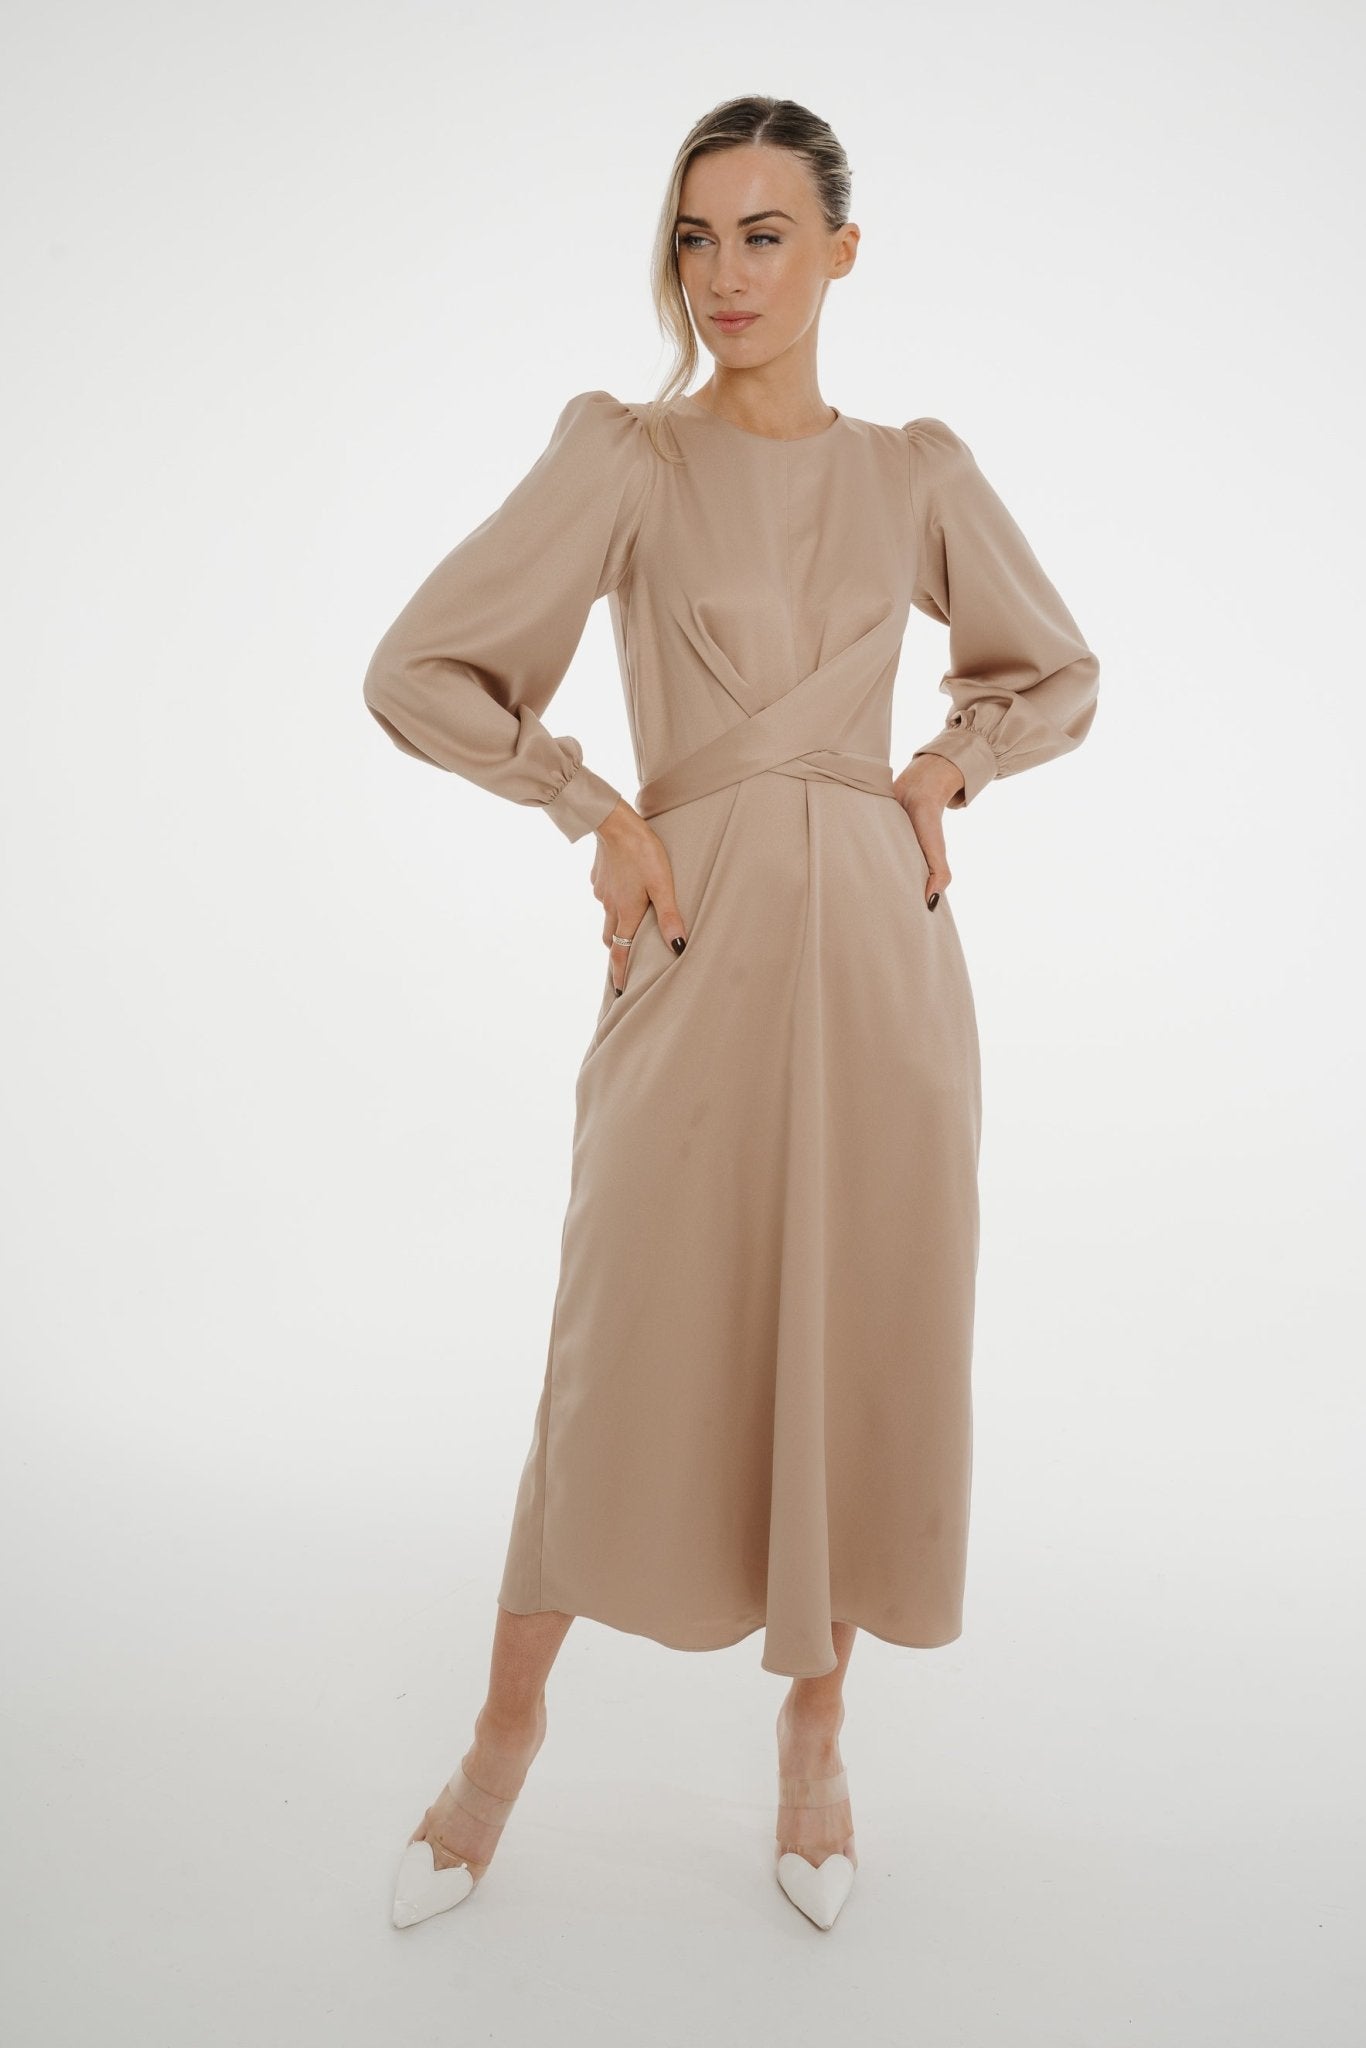 Celine A-Line Satin Mix Dress In Mocha - The Walk in Wardrobe